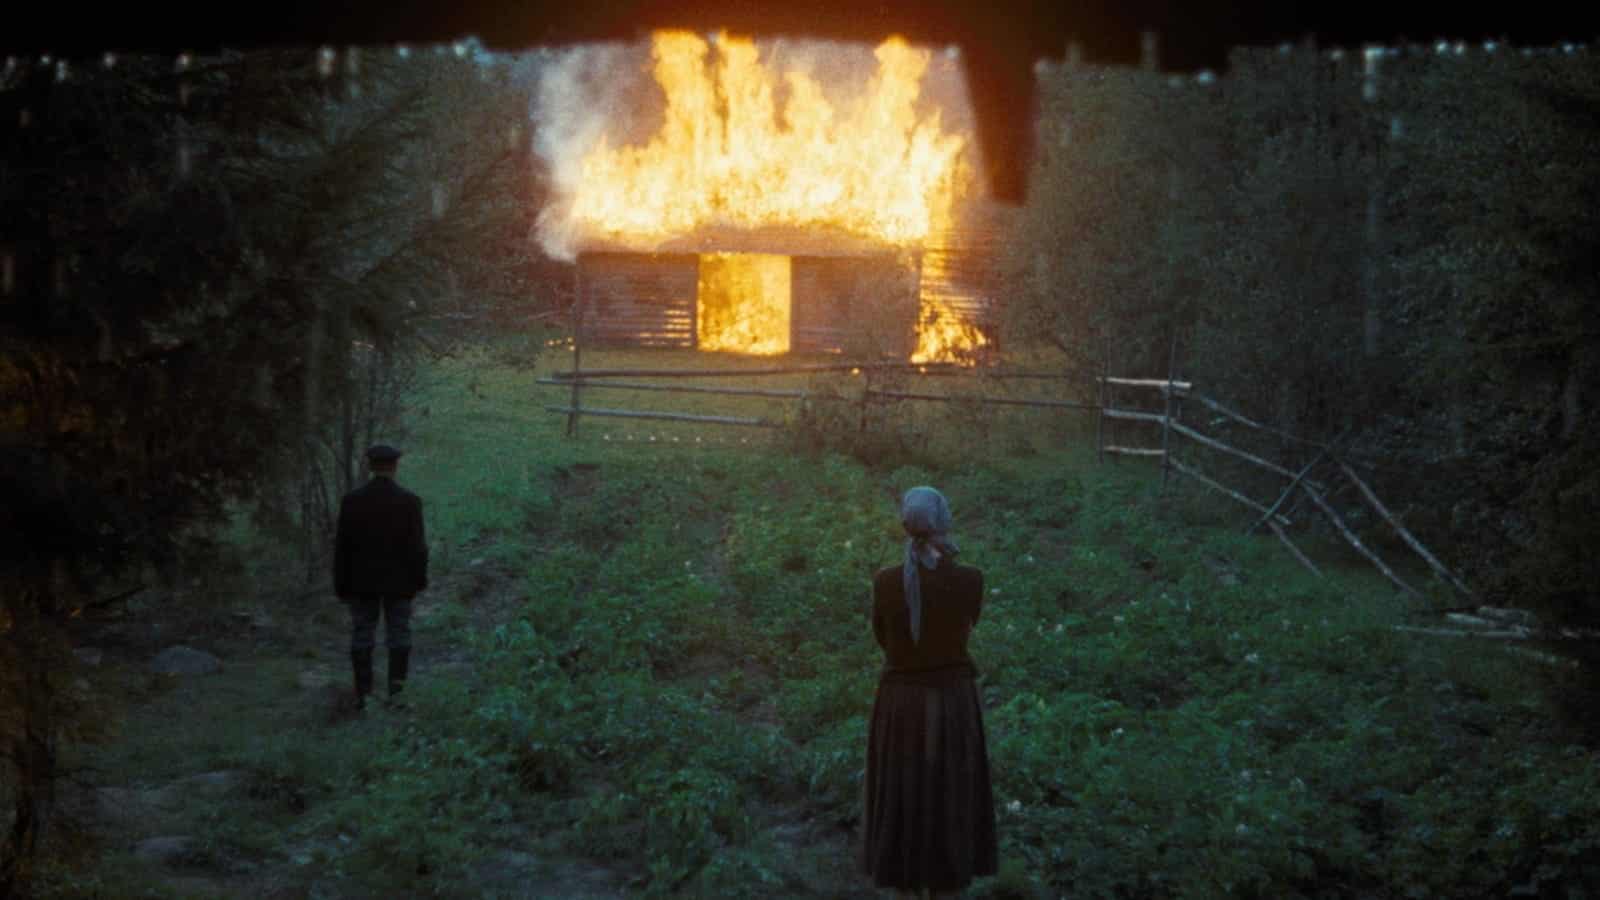 A burning barn